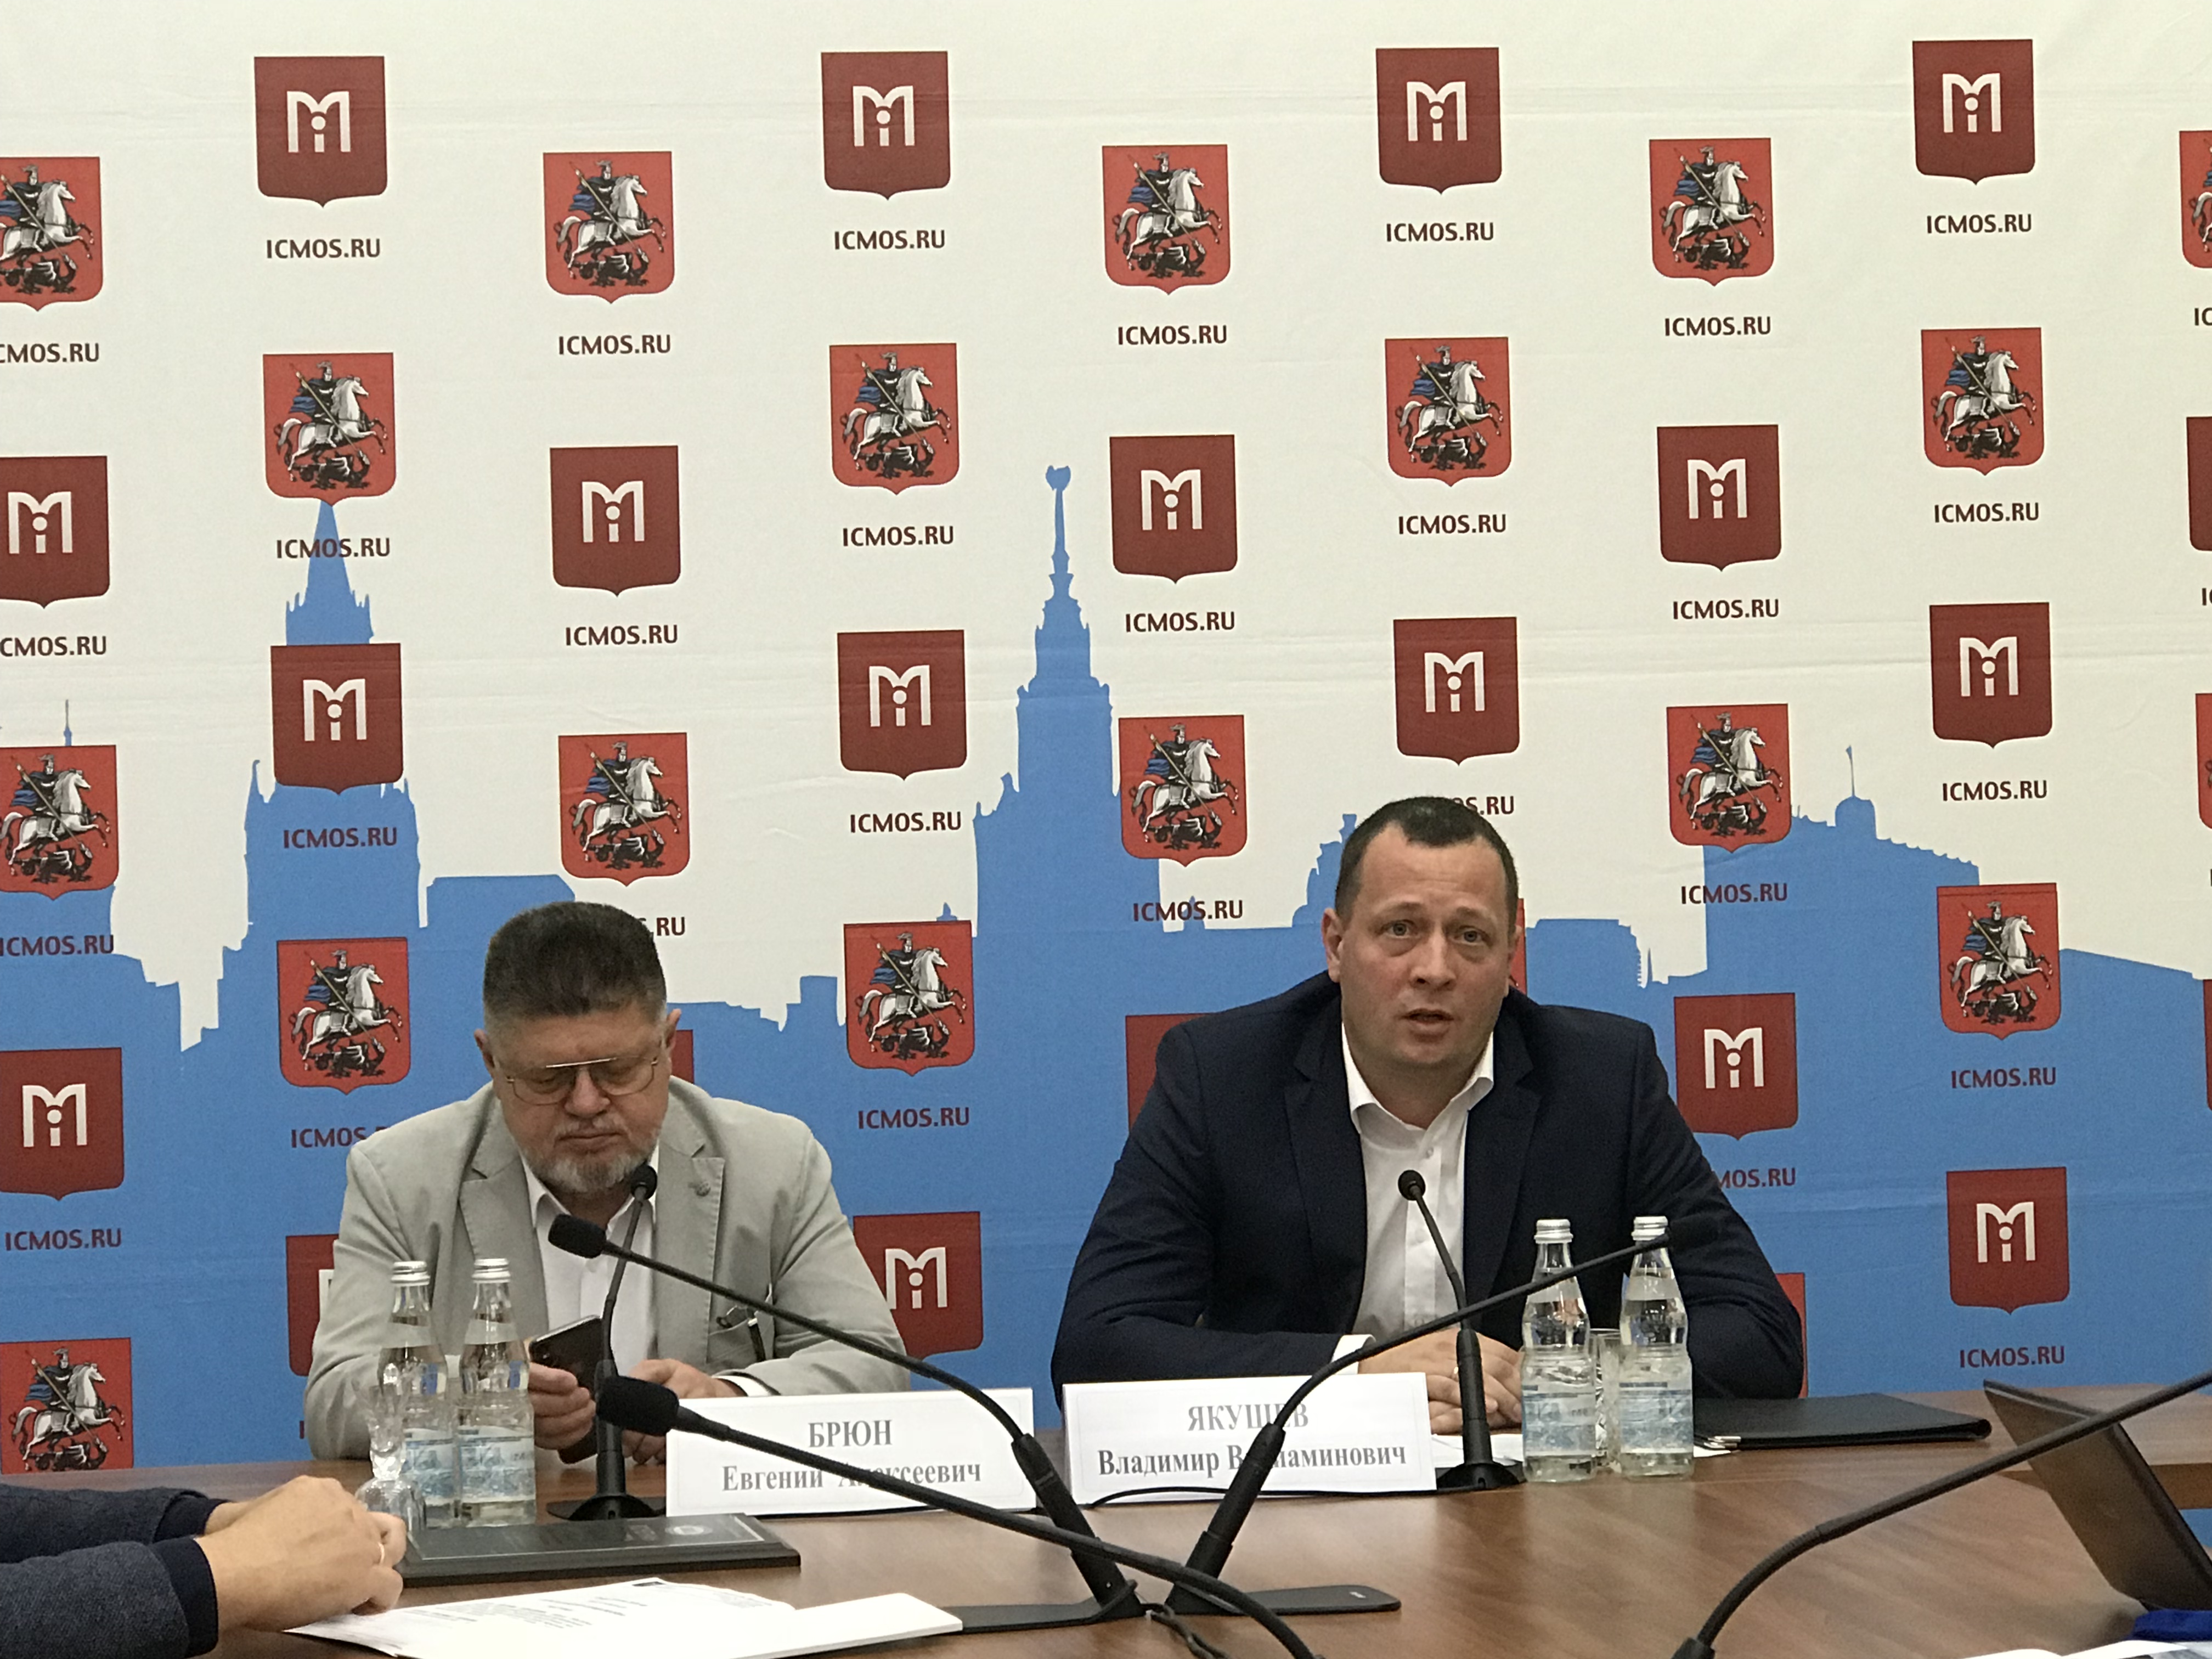 Пресс-конференция состоялась в Москве